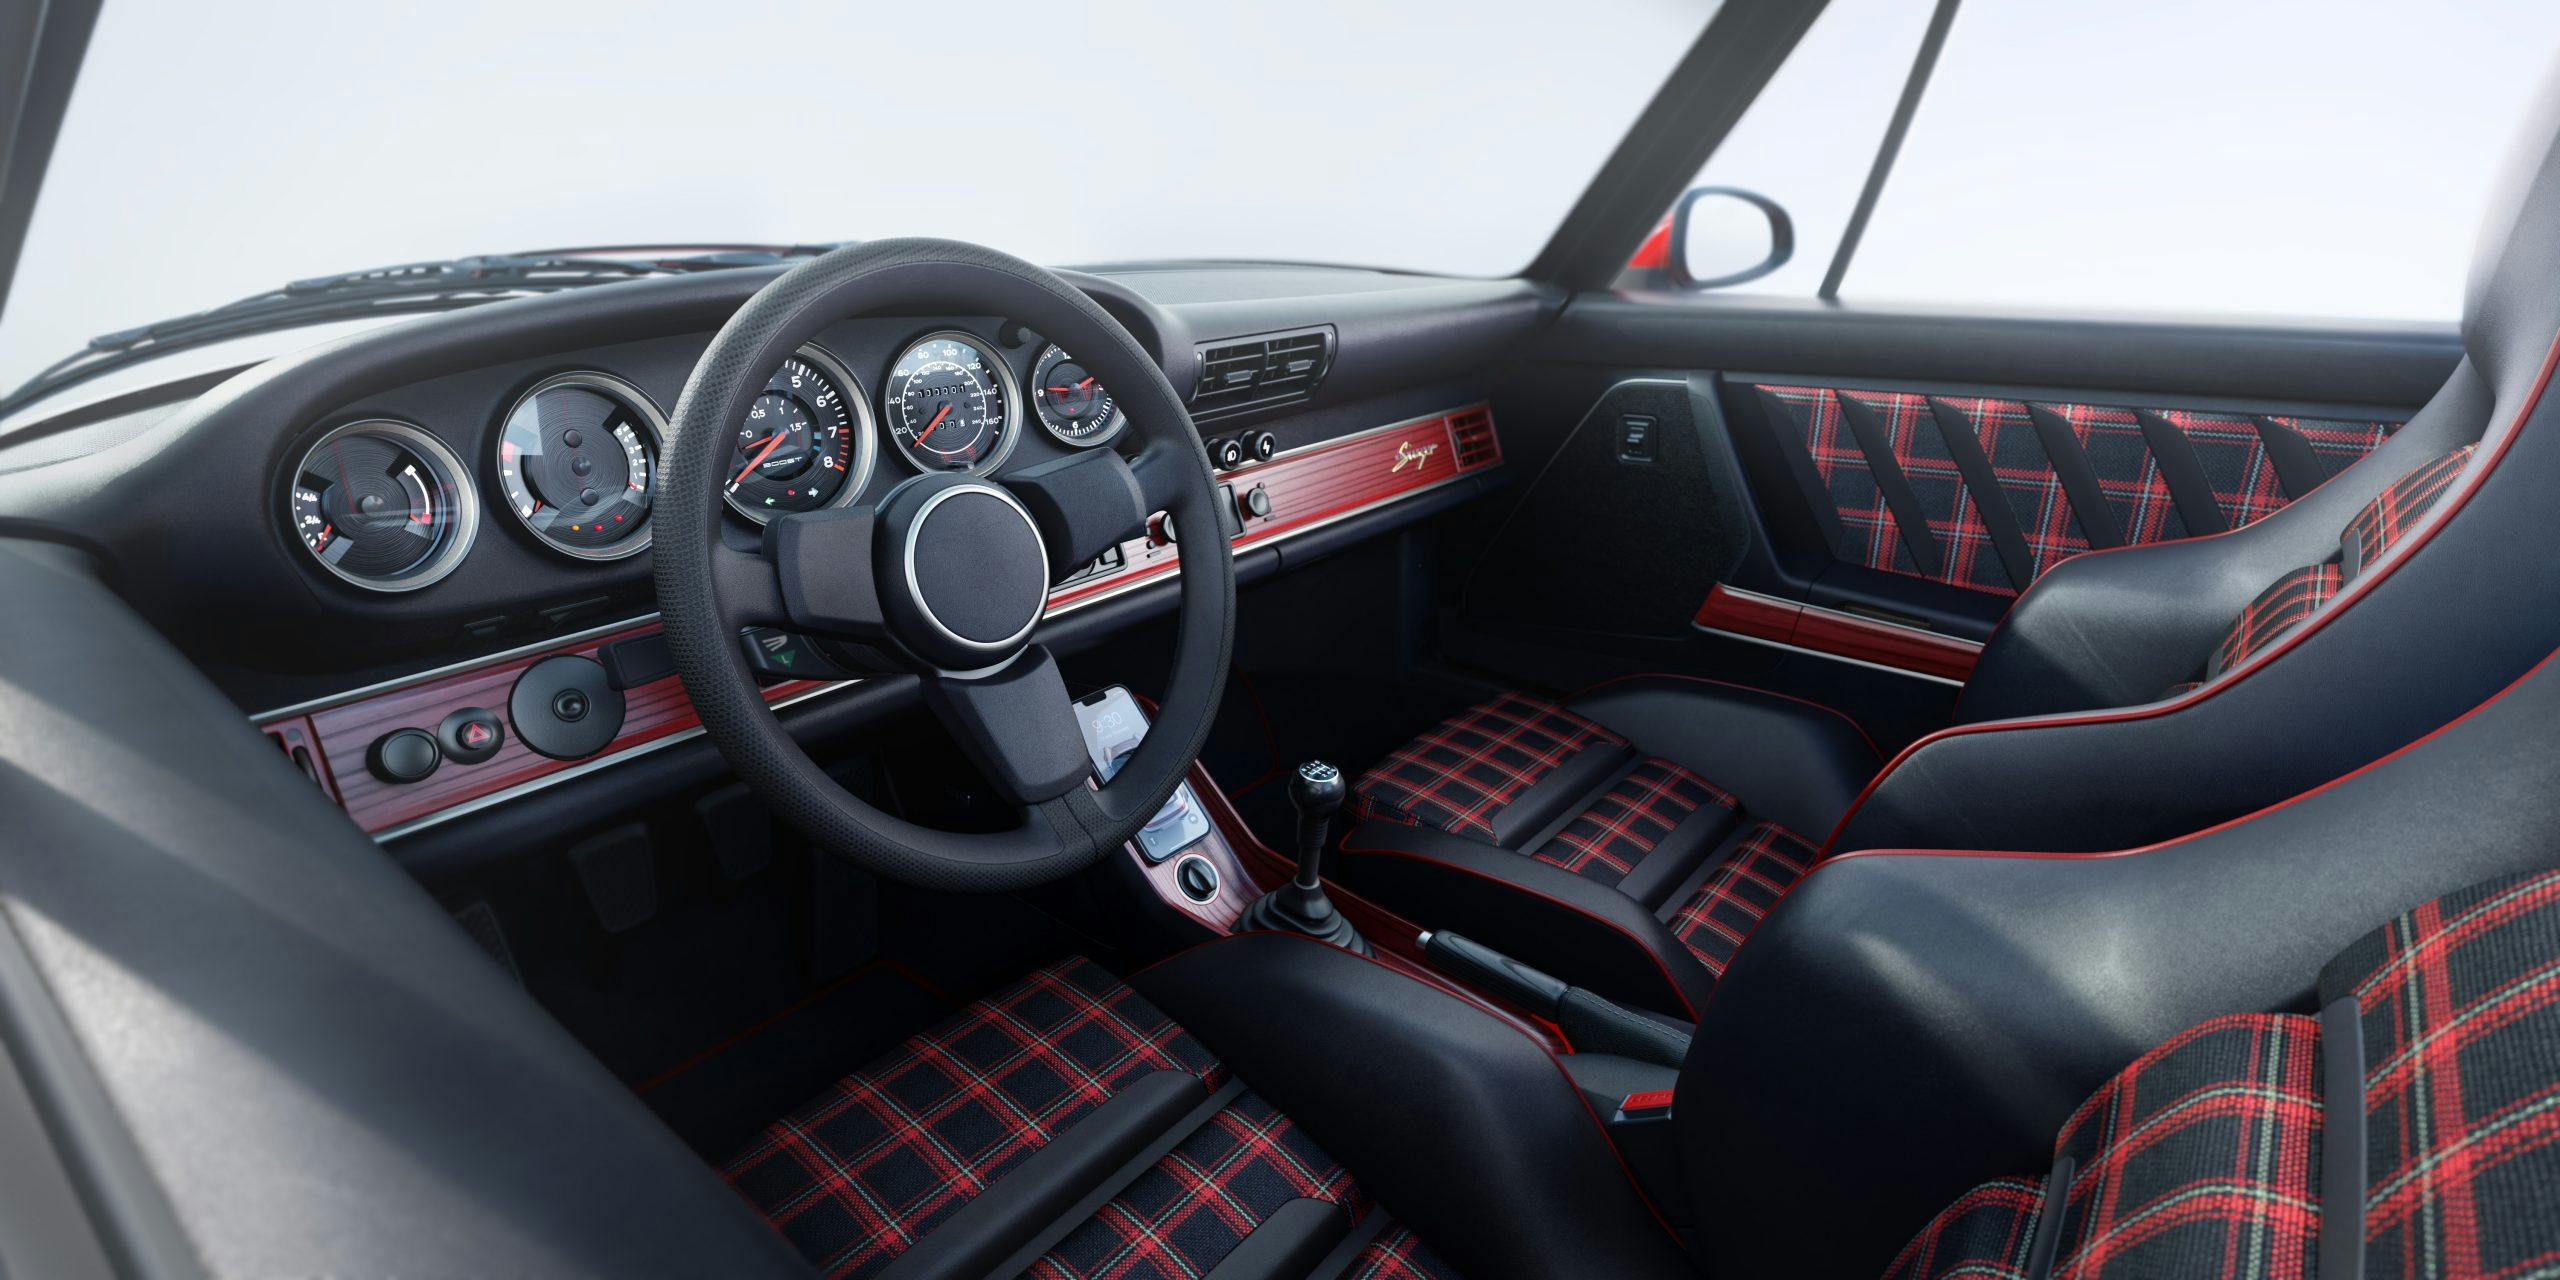 Singer 964 Cabriolet Turbo Study interior